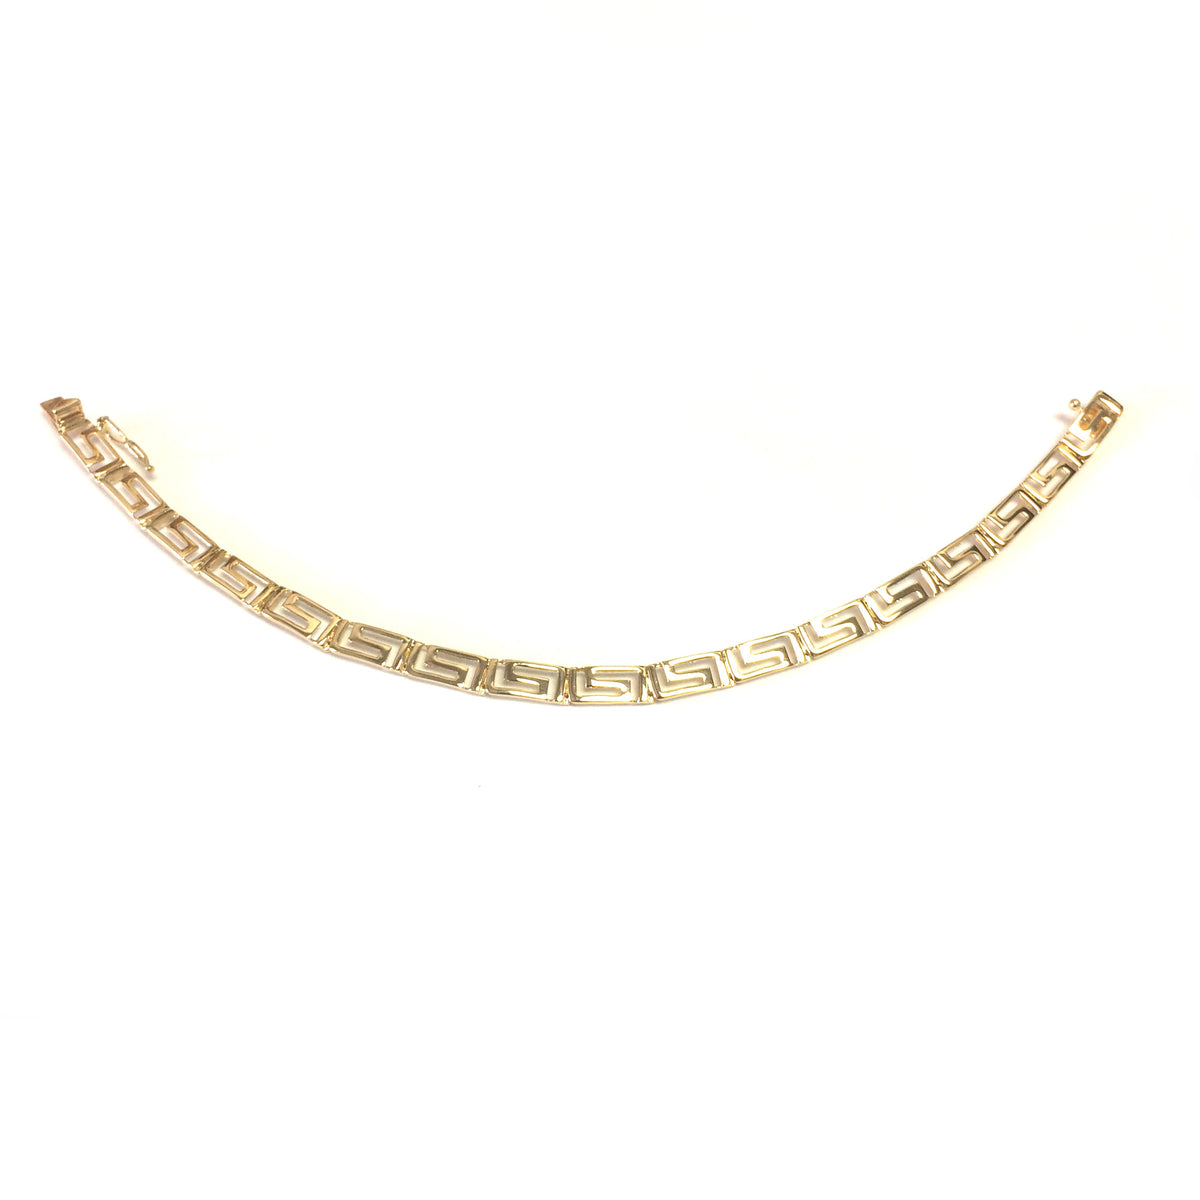 Griechisches Schlüssel-Gliederarmband aus 14-karätigem Gelbgold, 7,25 Zoll, feiner Designerschmuck für Männer und Frauen